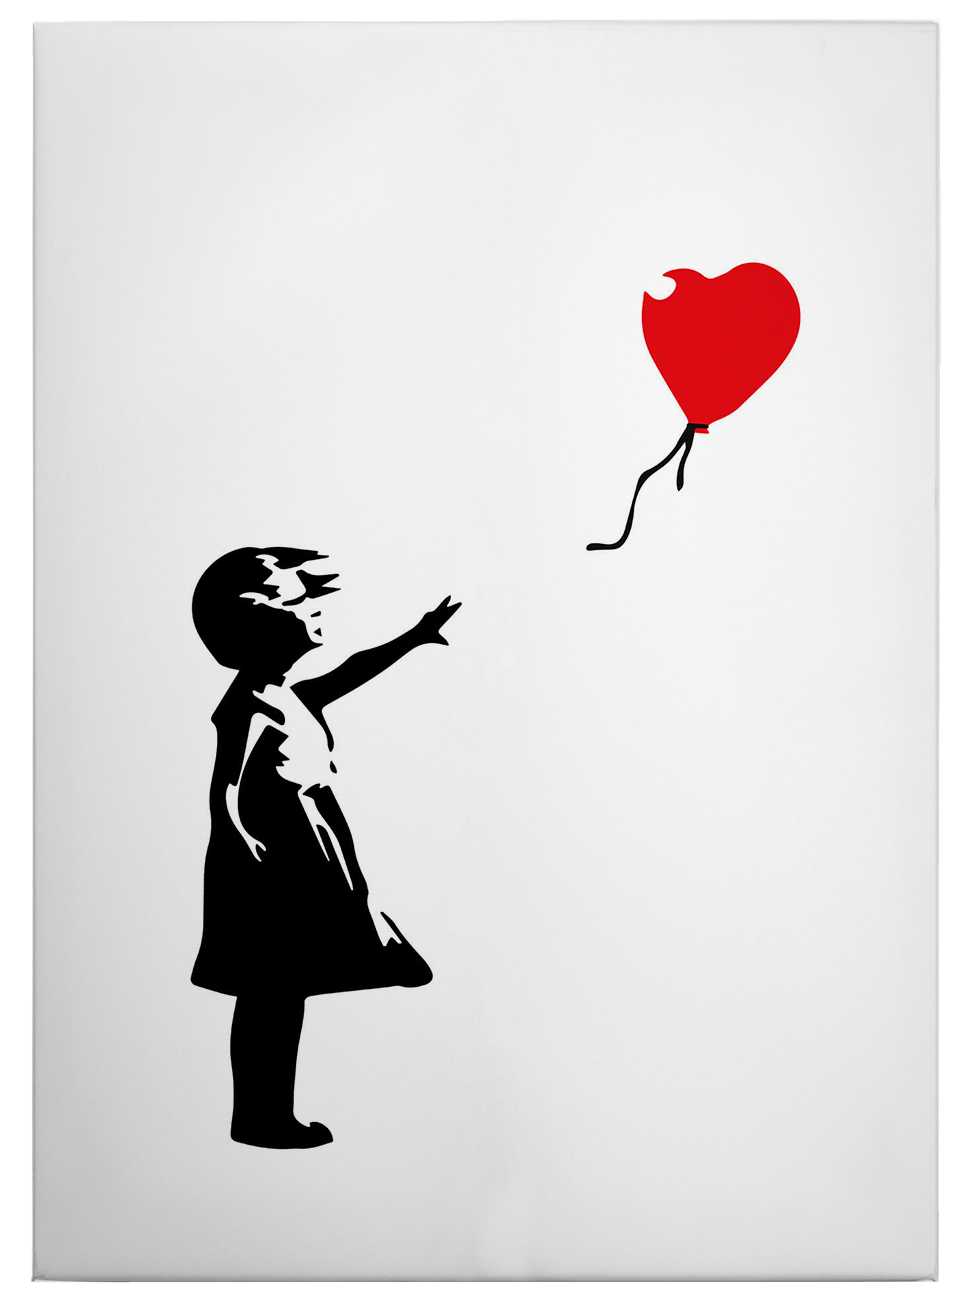             Canvas schilderij "Meisje met rode ballon" van Banksy - 0.50 m x 0.70 m
        